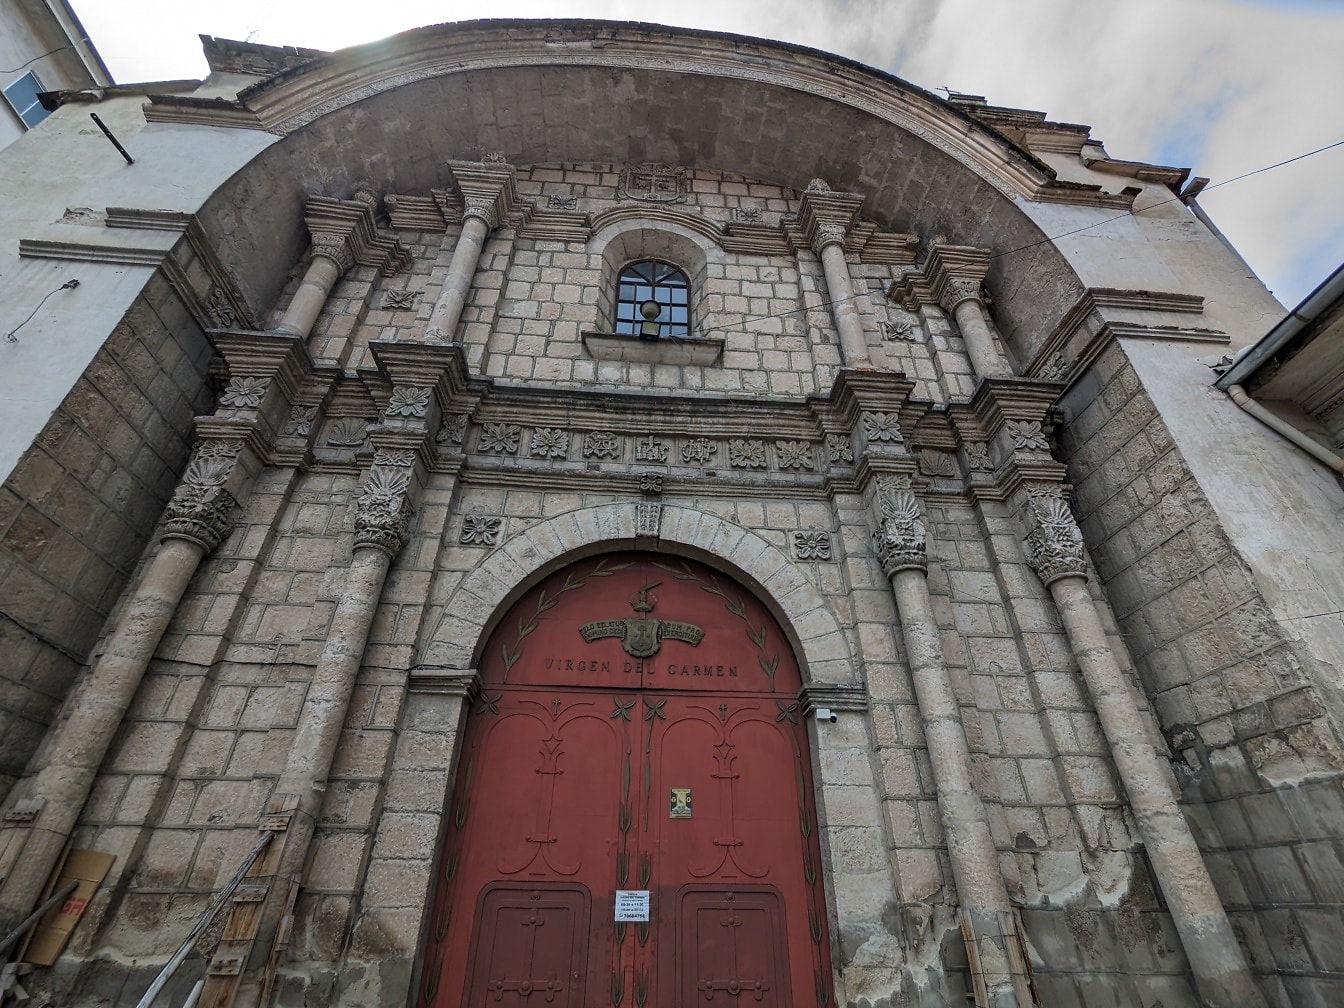 Inngang til kirken av jomfru Carmen med en rød inngangsdør laget av støpejern